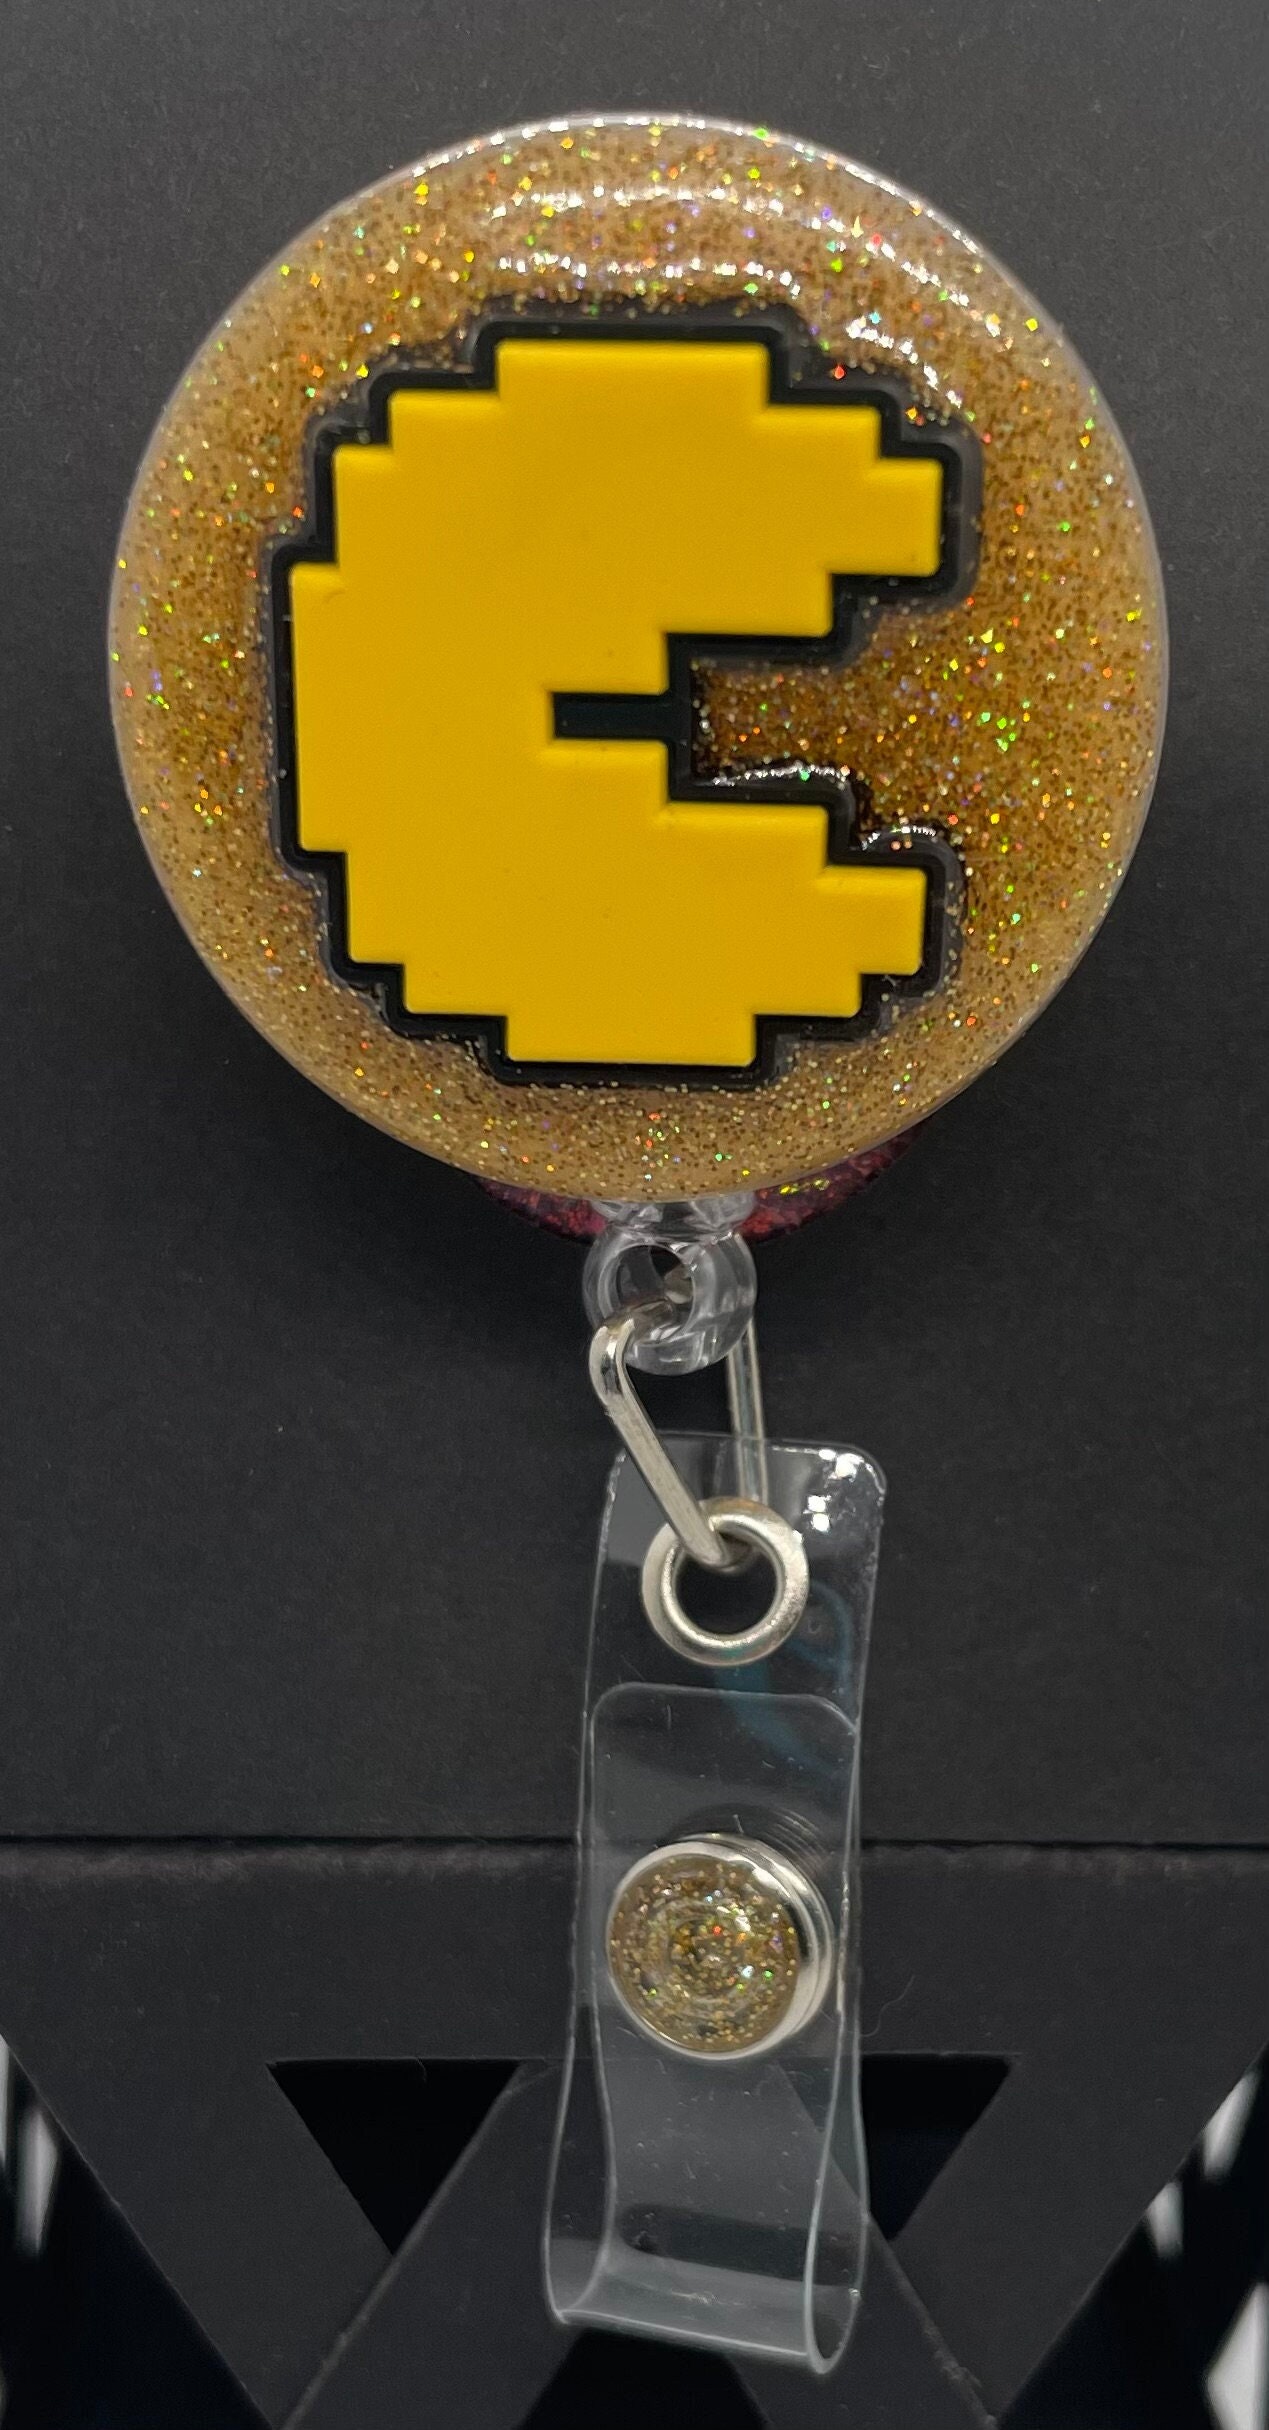 Pacman Badge Reel 